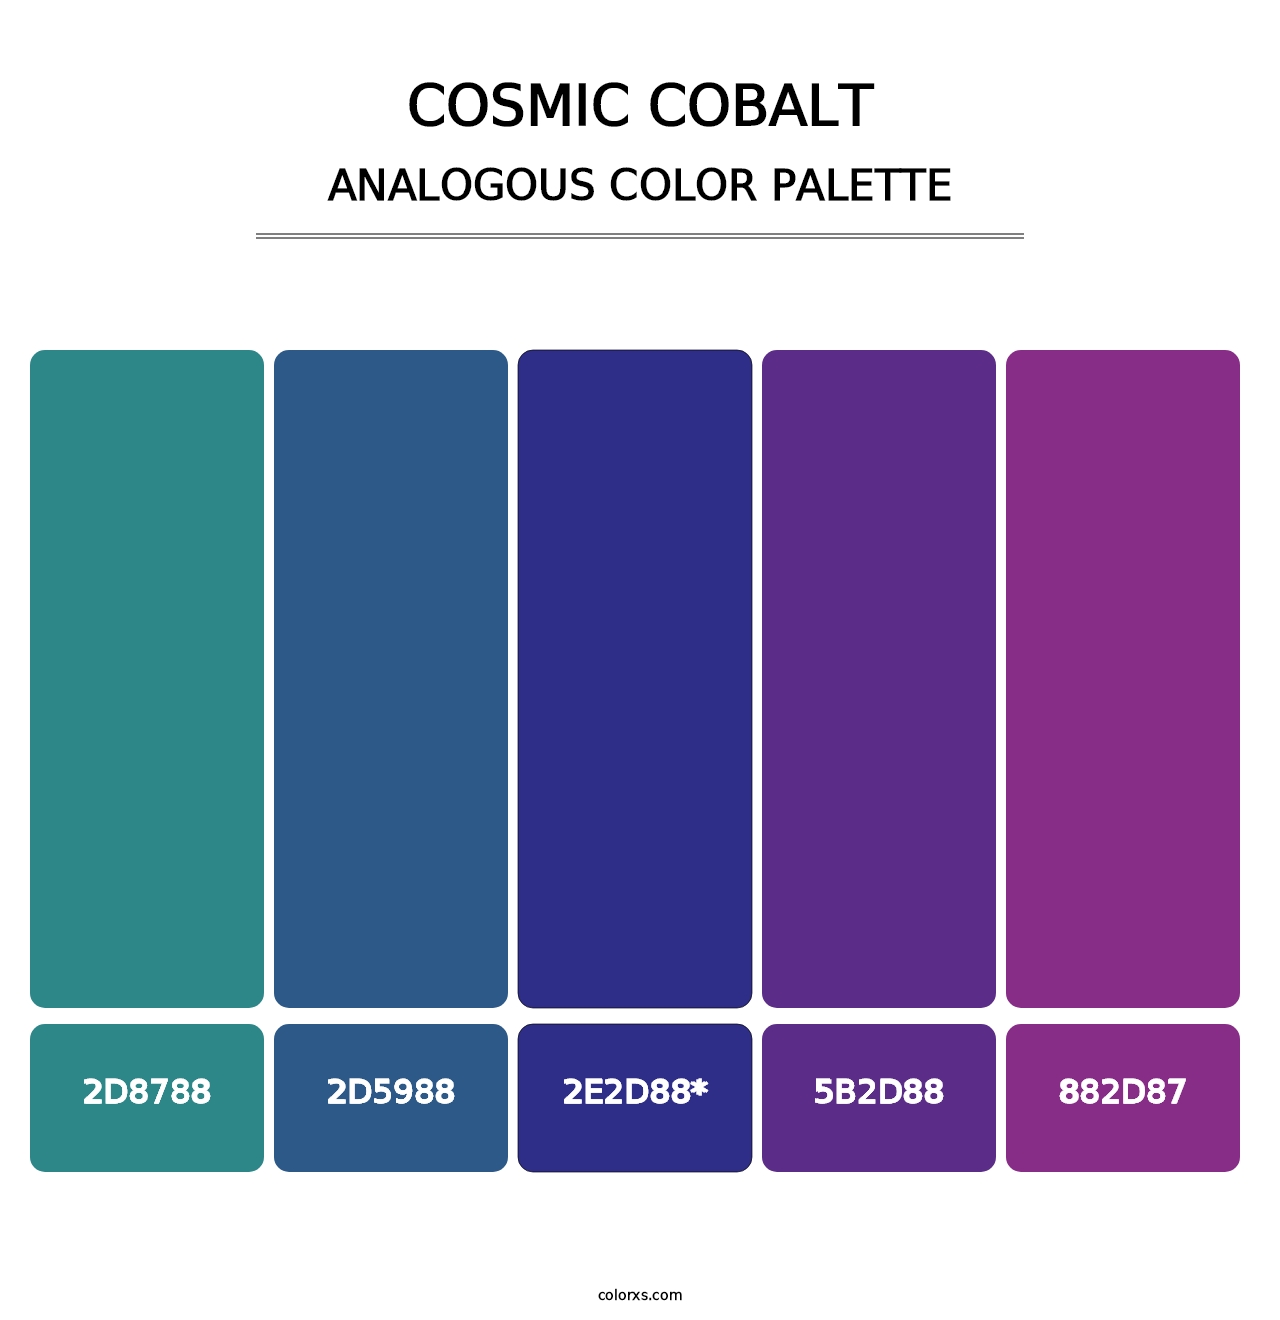 Cosmic Cobalt - Analogous Color Palette